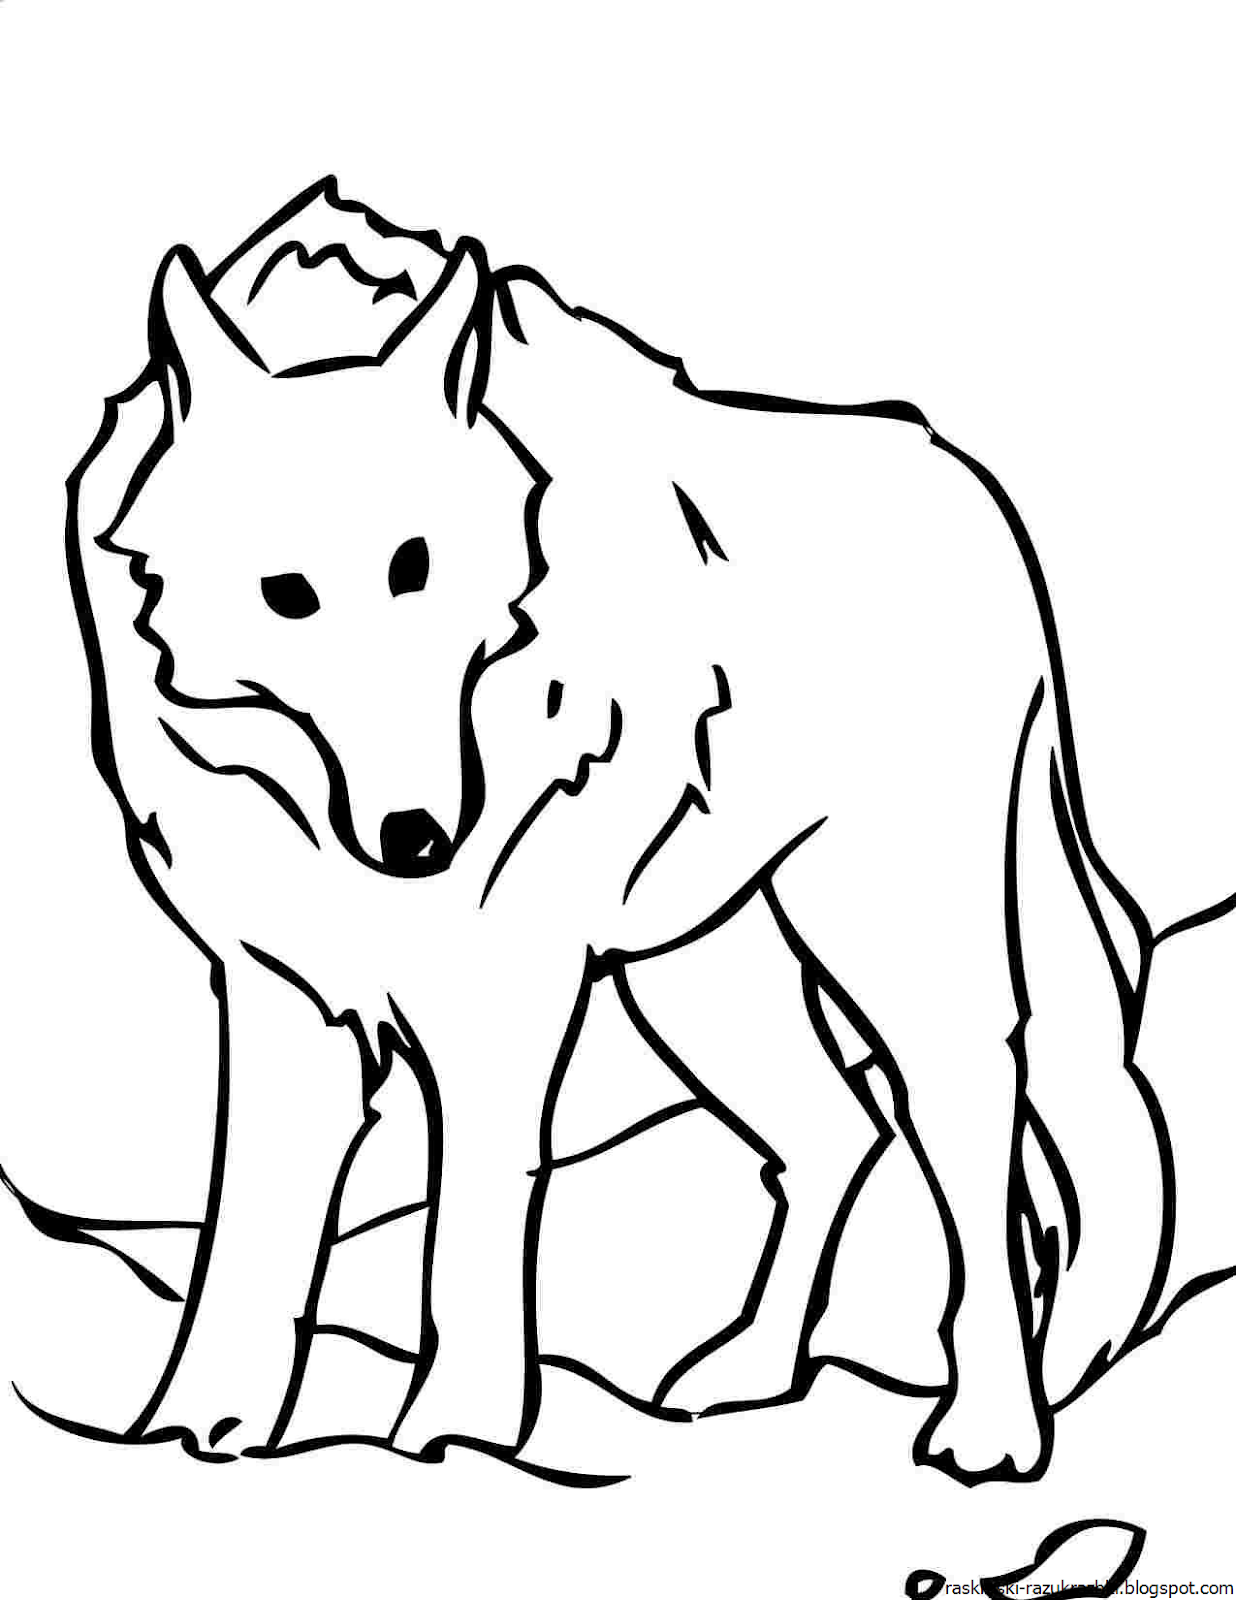 Волк картинка распечатать. Раскраска волк. Волк раскраска для детей. Раскраска Волга. Волк рисунок для детей.